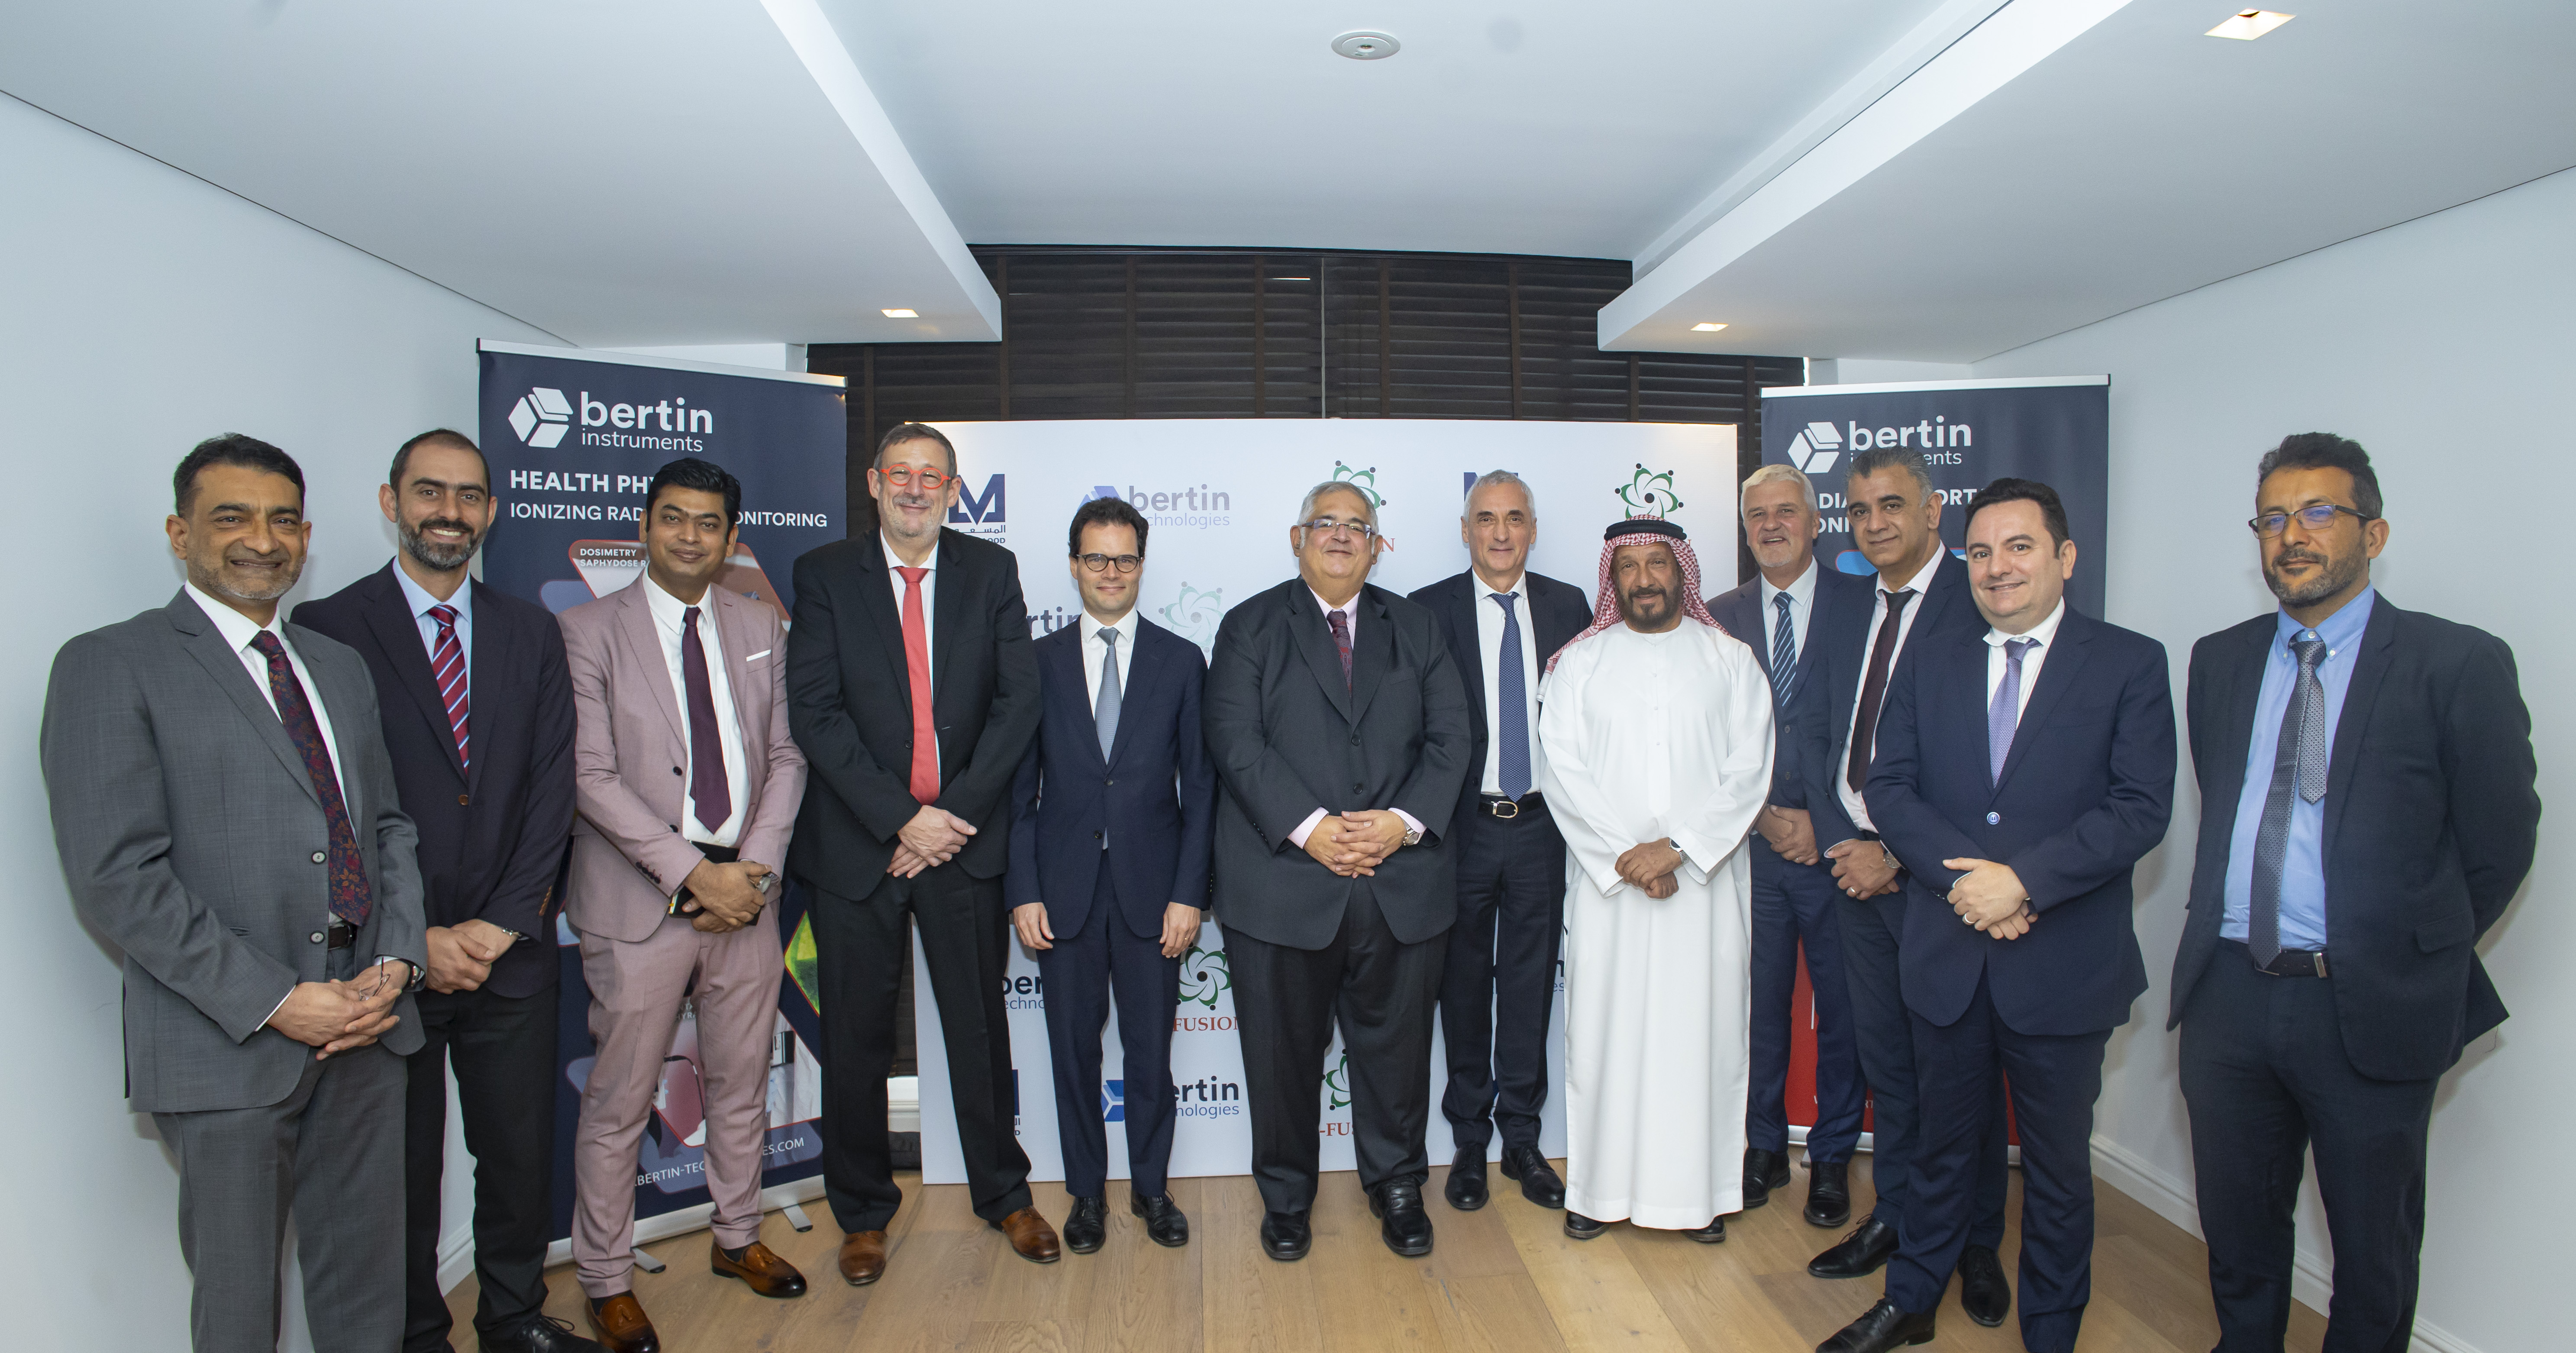 مجموعة "المسعود" توقع مذكرة تعاون استراتيجي مع شركة "بيرتن تكنولوجيز" لدعم قطاع الطاقة النووية في دولة الإمارات العربية المتحدة